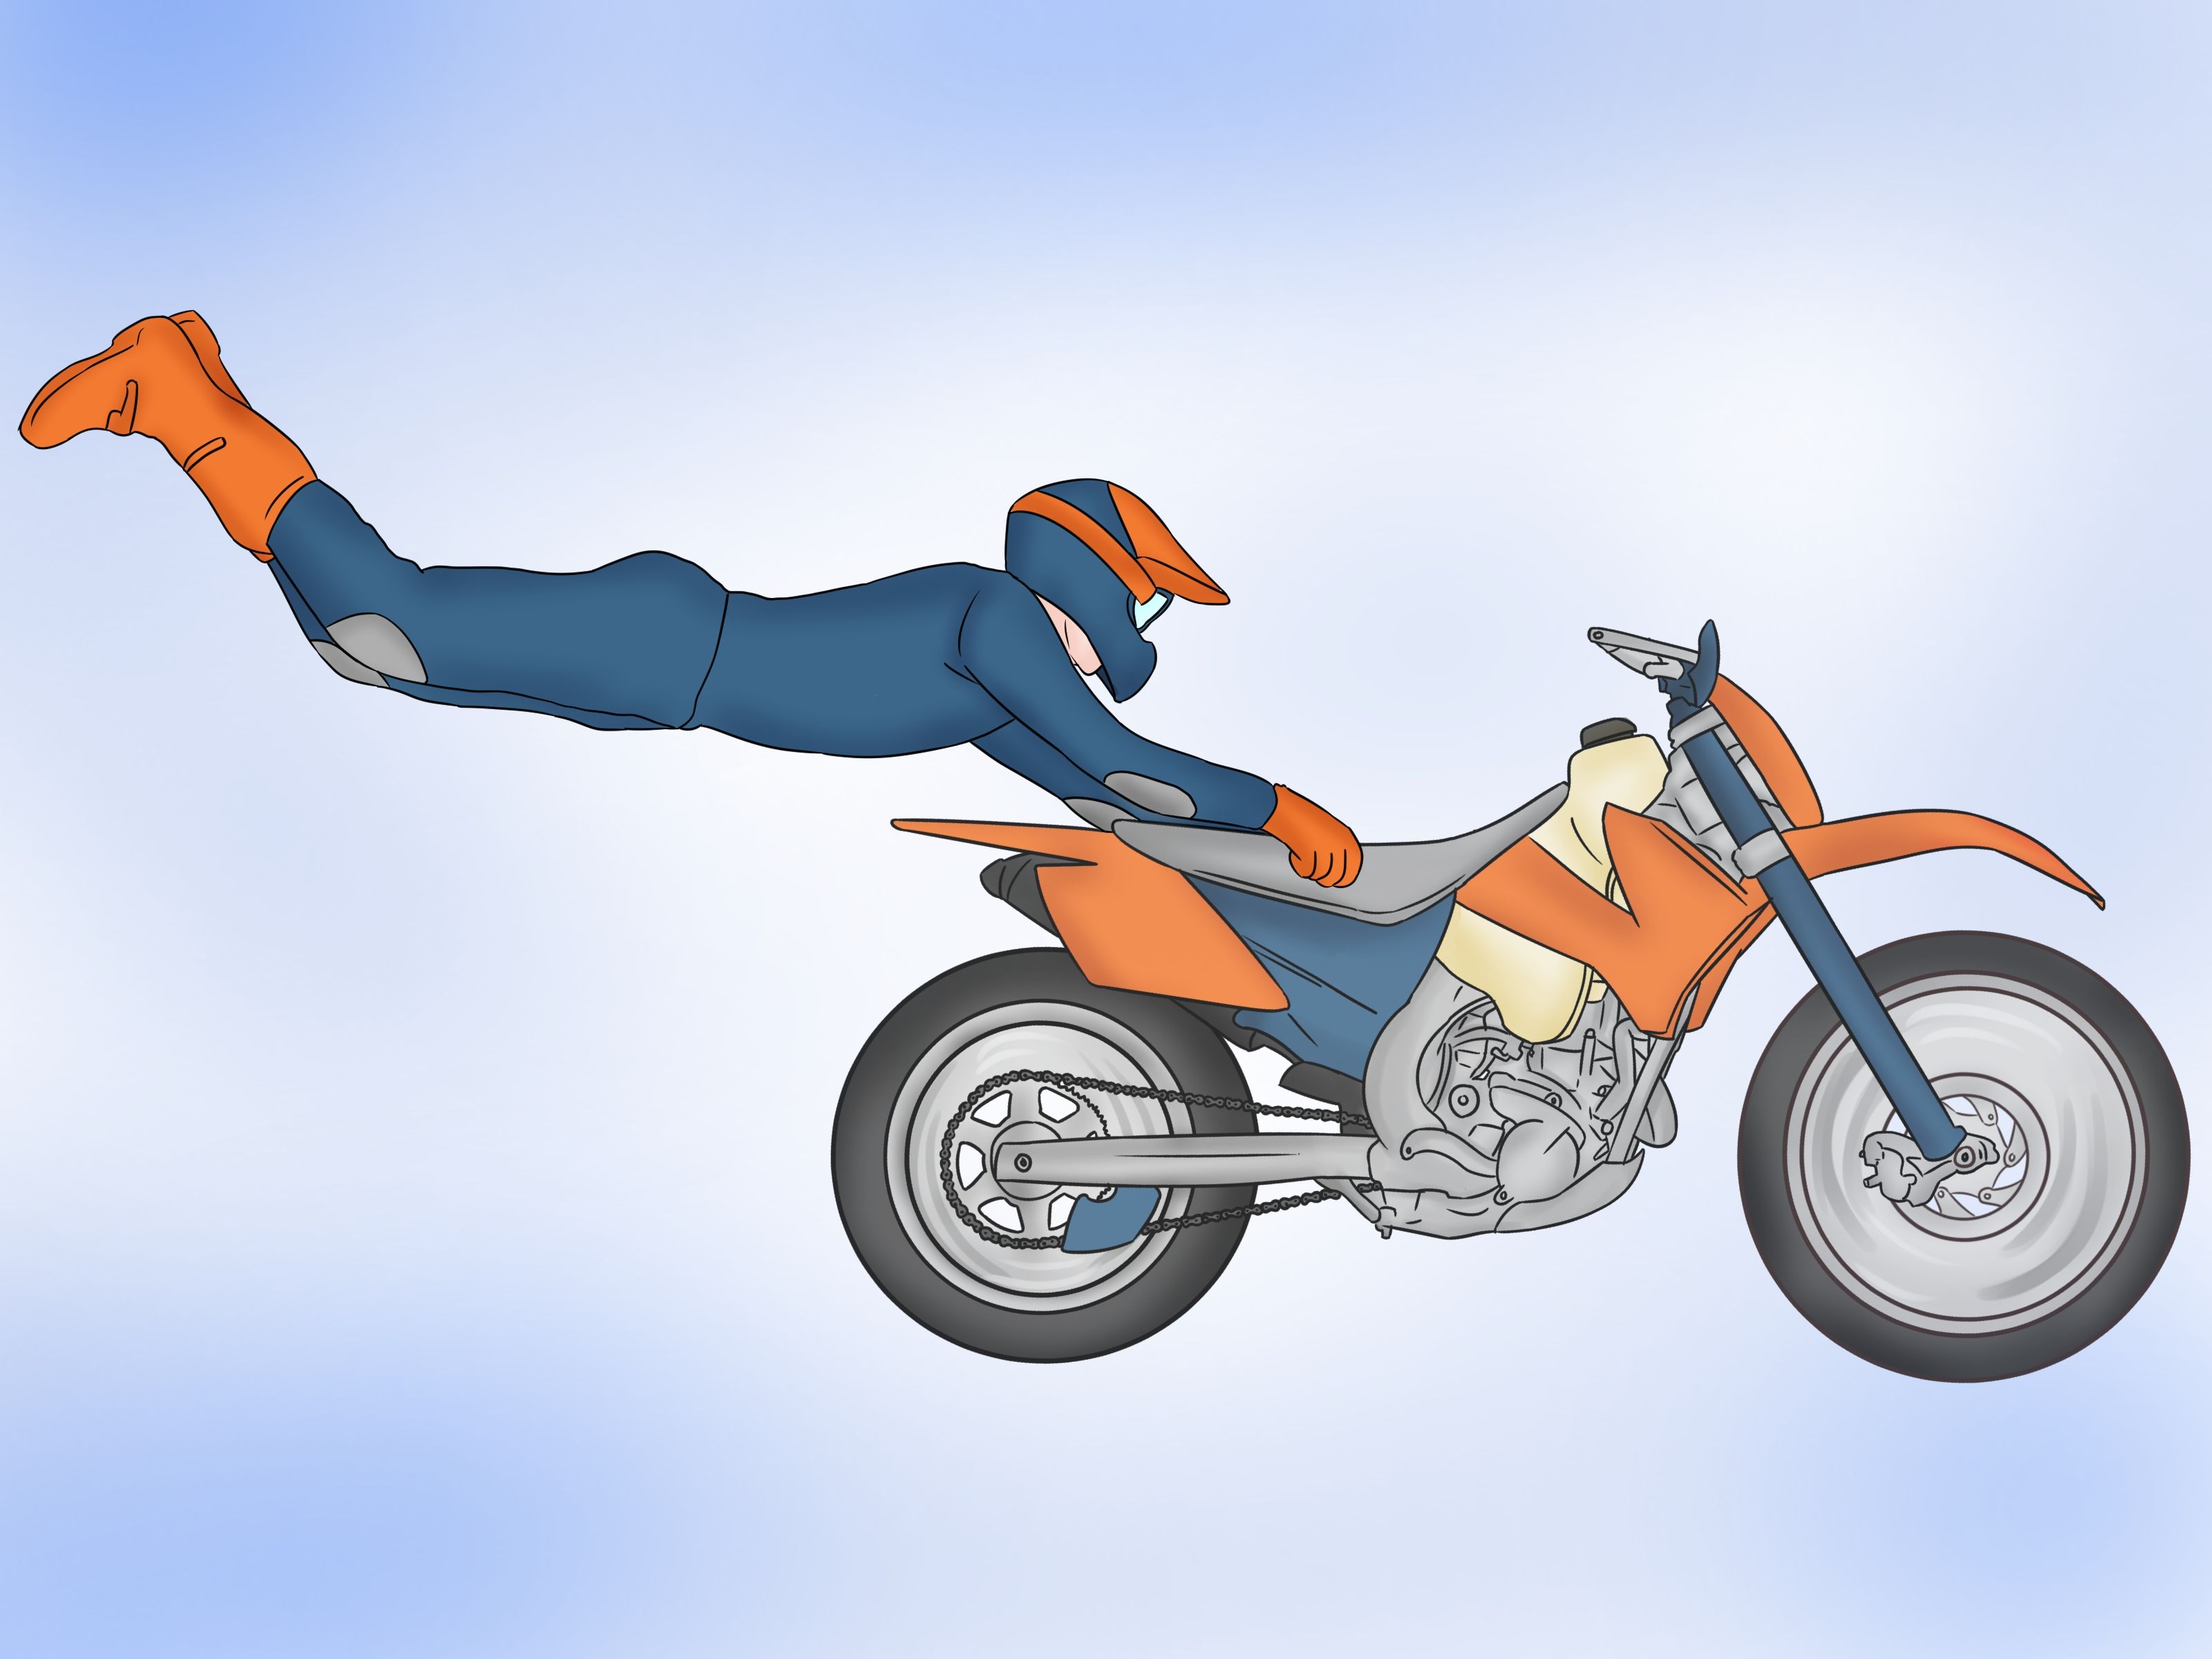 عکس انیمیشن پرش و حرکات نمایشی با موتور تریل